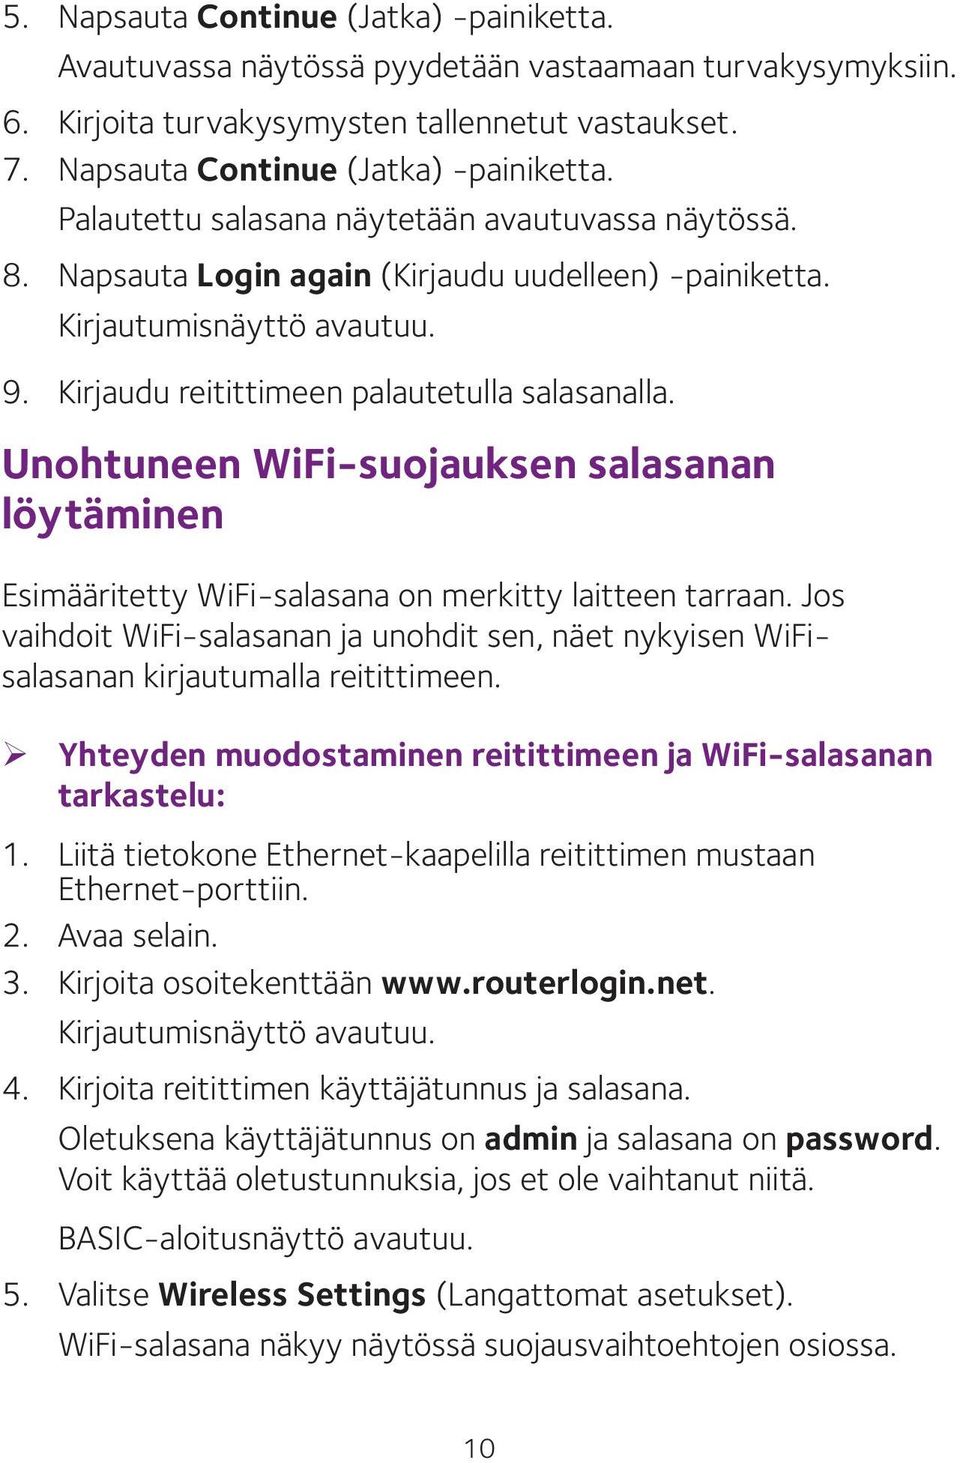 Unohtuneen WiFi-suojauksen salasanan löytäminen Esimääritetty WiFi-salasana on merkitty laitteen tarraan.